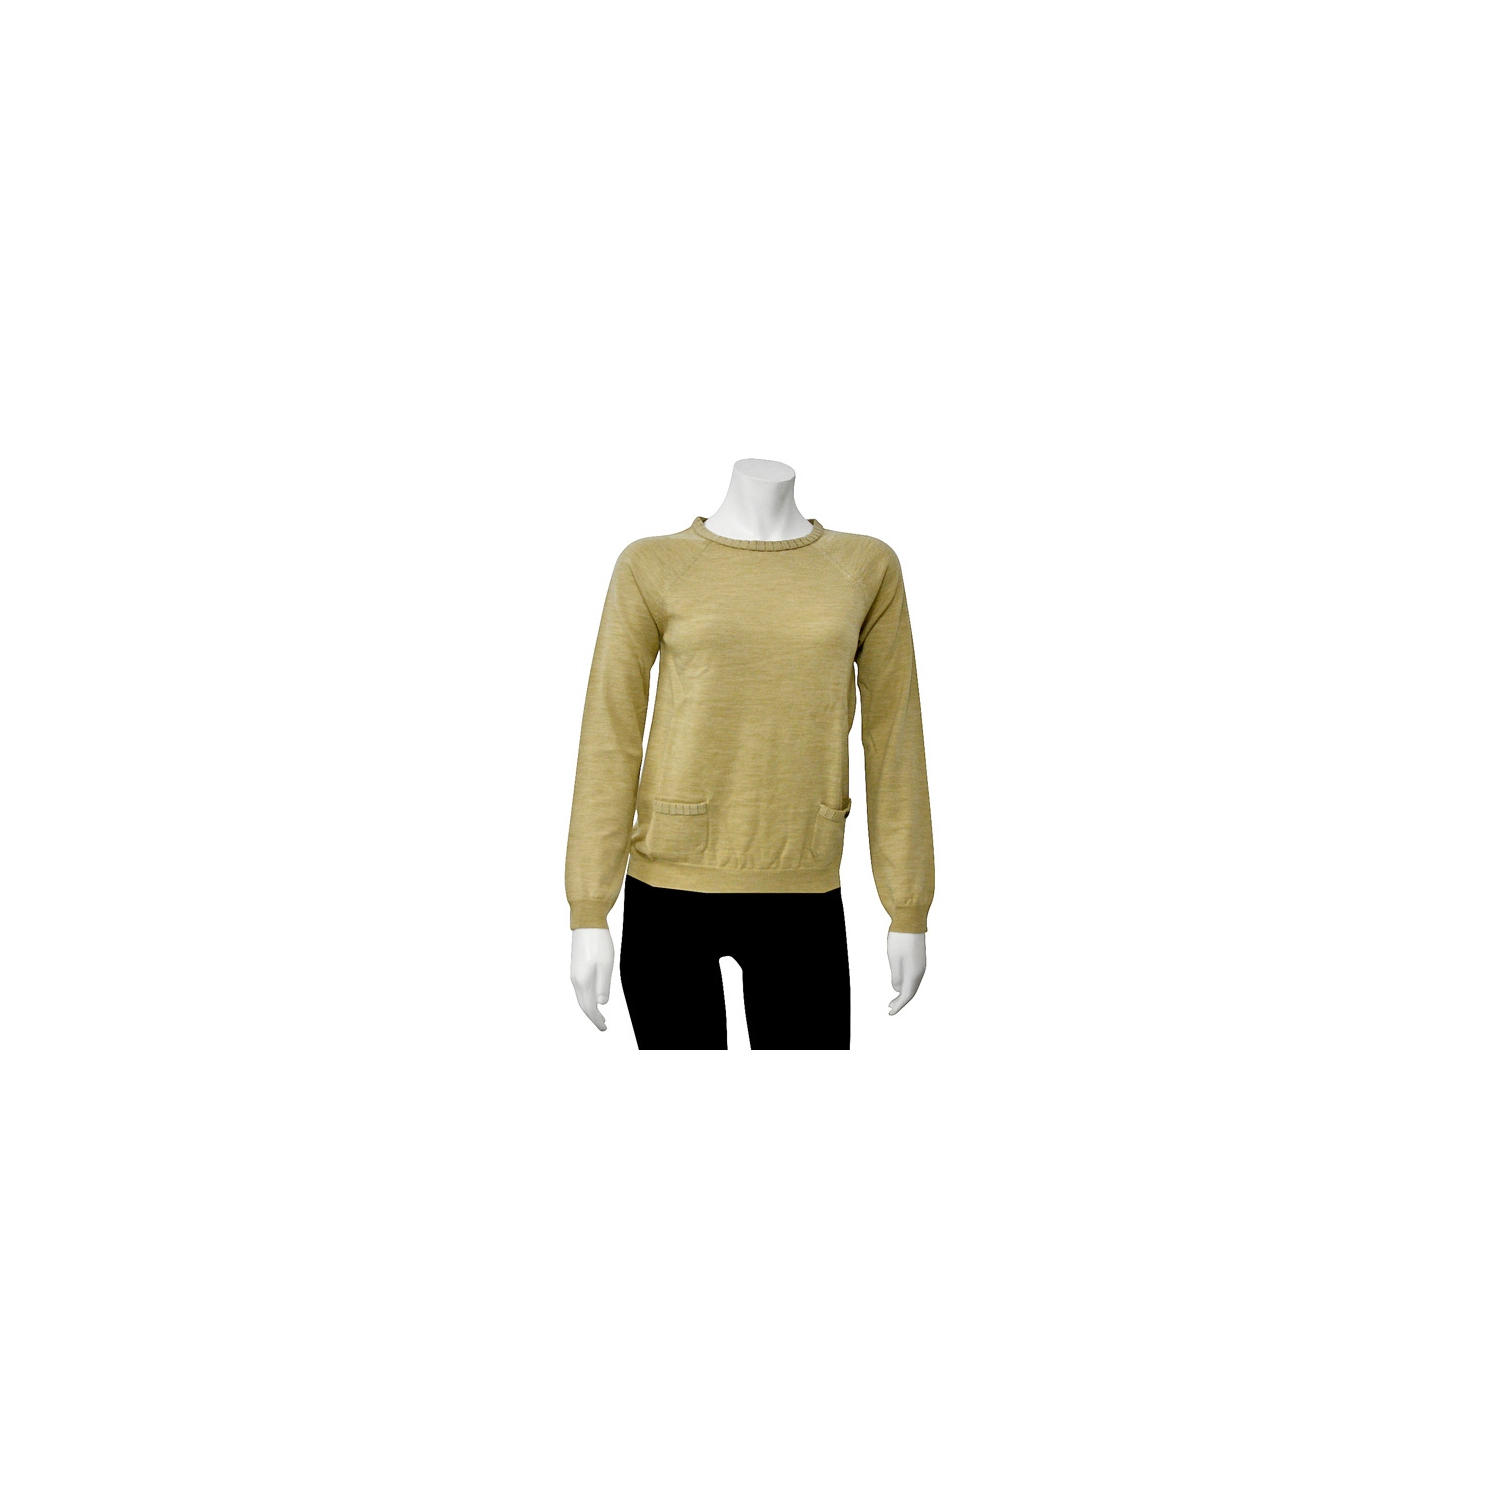 Ferragamo WoMen's Long Sleeve Tan Knit Sweater in X-Large